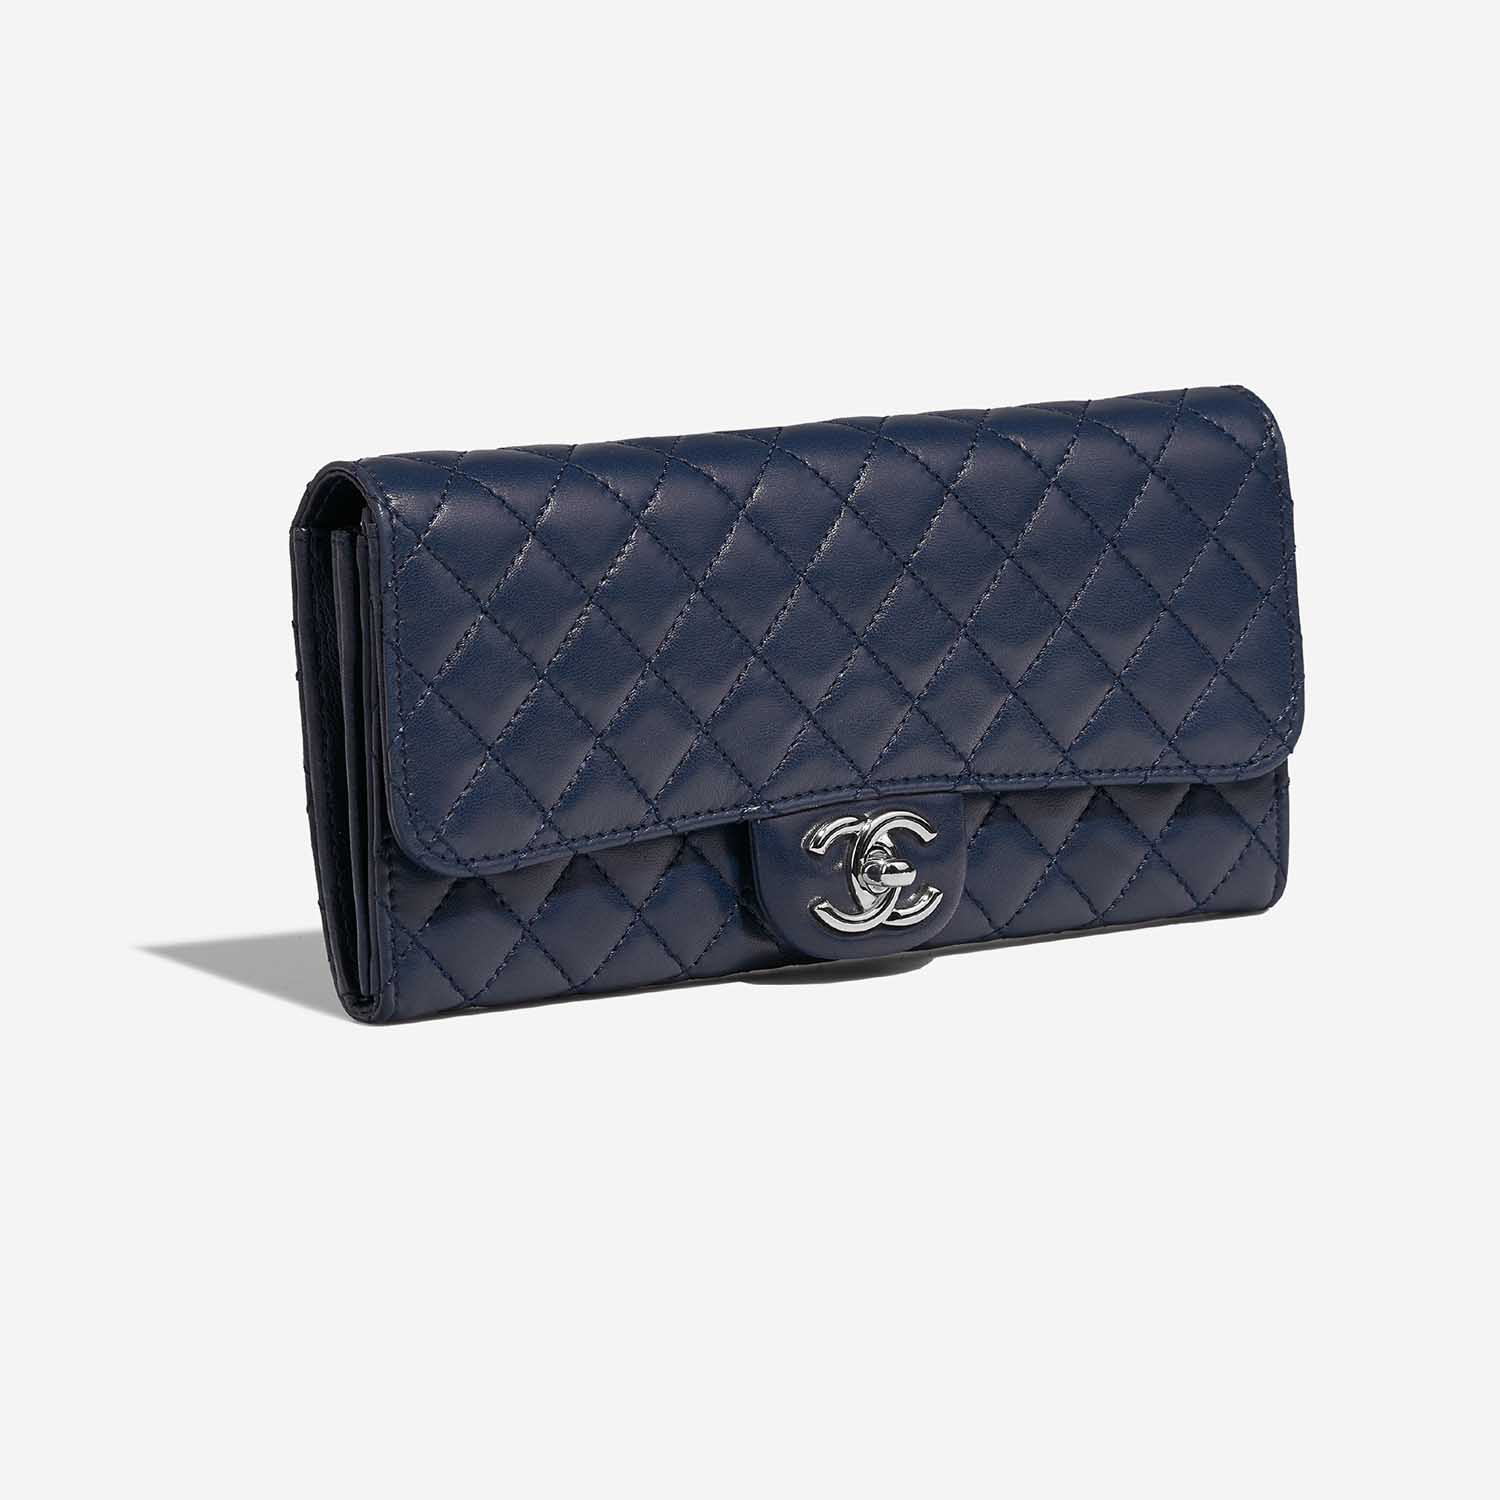 Chanel Timeless Medium DarkBlue 6SF S | Verkaufen Sie Ihre Designer-Tasche auf Saclab.com